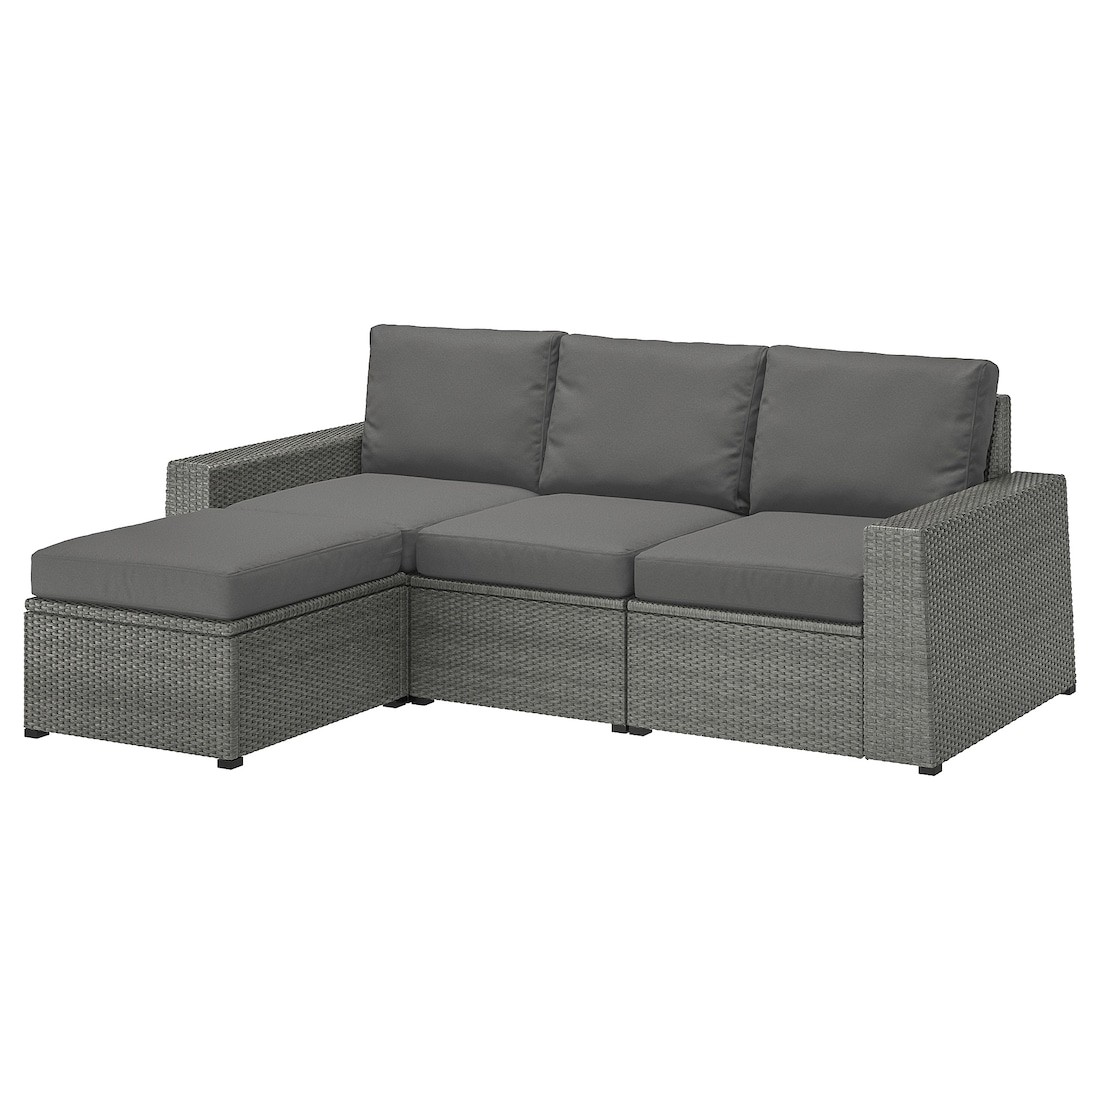 IKEA SOLLERÖN СОЛЕРОН 3-місний модульний диван, для вулиці, з підставкою для ніг темно-сірий / Frösön / Duvholmen темно-сірий 09287837 092.878.37